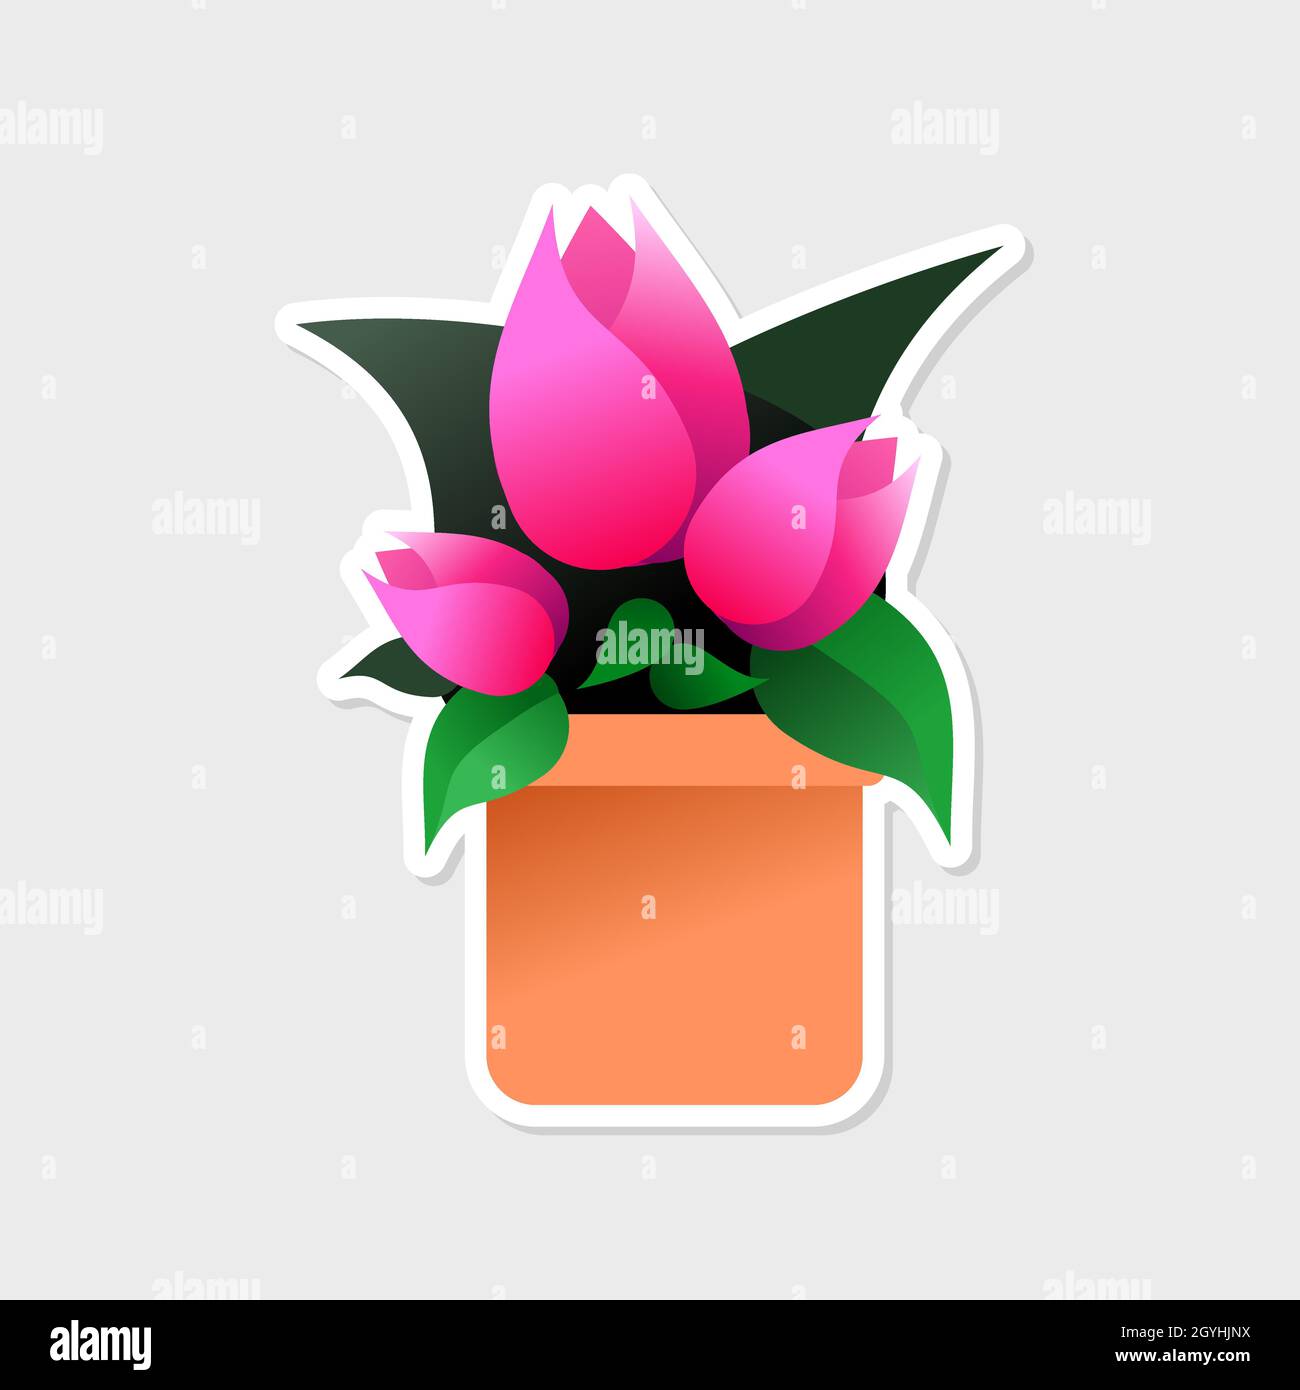 Drei rosa Tulpen in einem Tontopf mit grünem Blattaufkleber. Verwenden Sie für Ihren Blumenladen, Botanik-Klasse, Frühling Verkäufe und Muttertag Geschenke. Stock Vektor